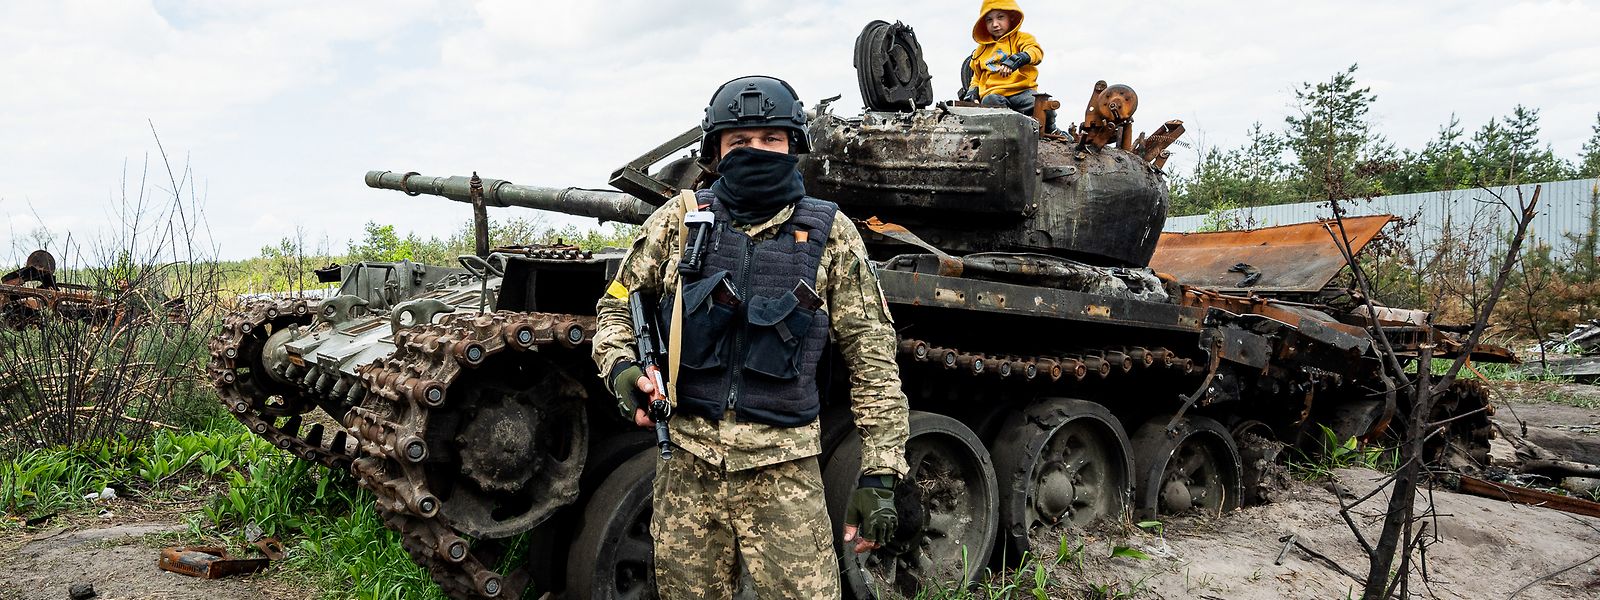 Ein ukrainischer Soldat, der in Nalyvaikivka gegen russische Einheiten gekämpft hat, steht vor einem zerstörten russischen Panzer, auf dem sein Sohn sitzt. Keine Partei außer der ADR zweifelte am Dienstag die Sanktionen und die Waffenlieferungen an.